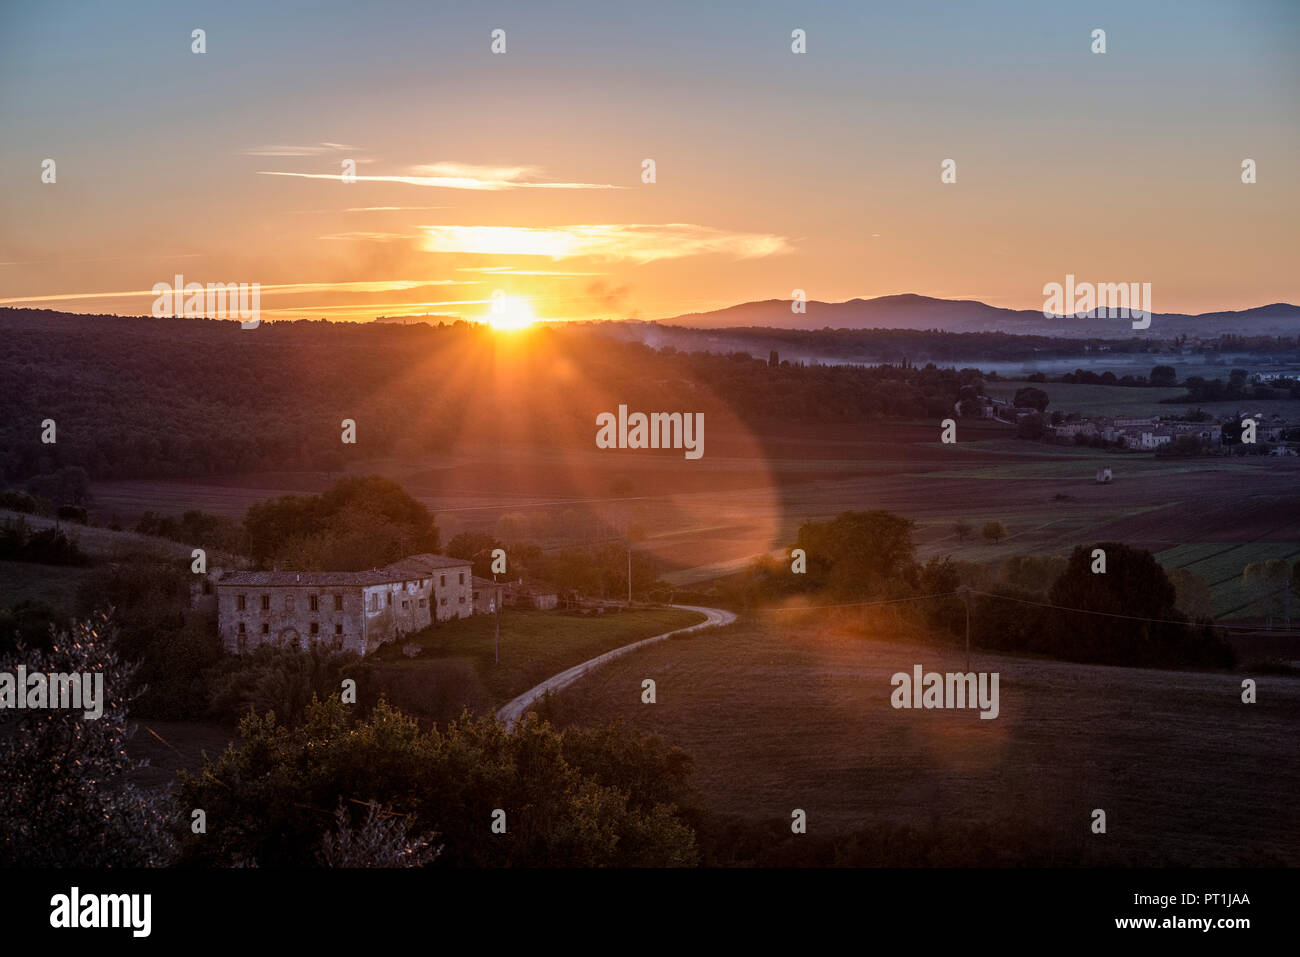 Italia, Toscana, puesta de sol en la provincia de Siena Foto de stock